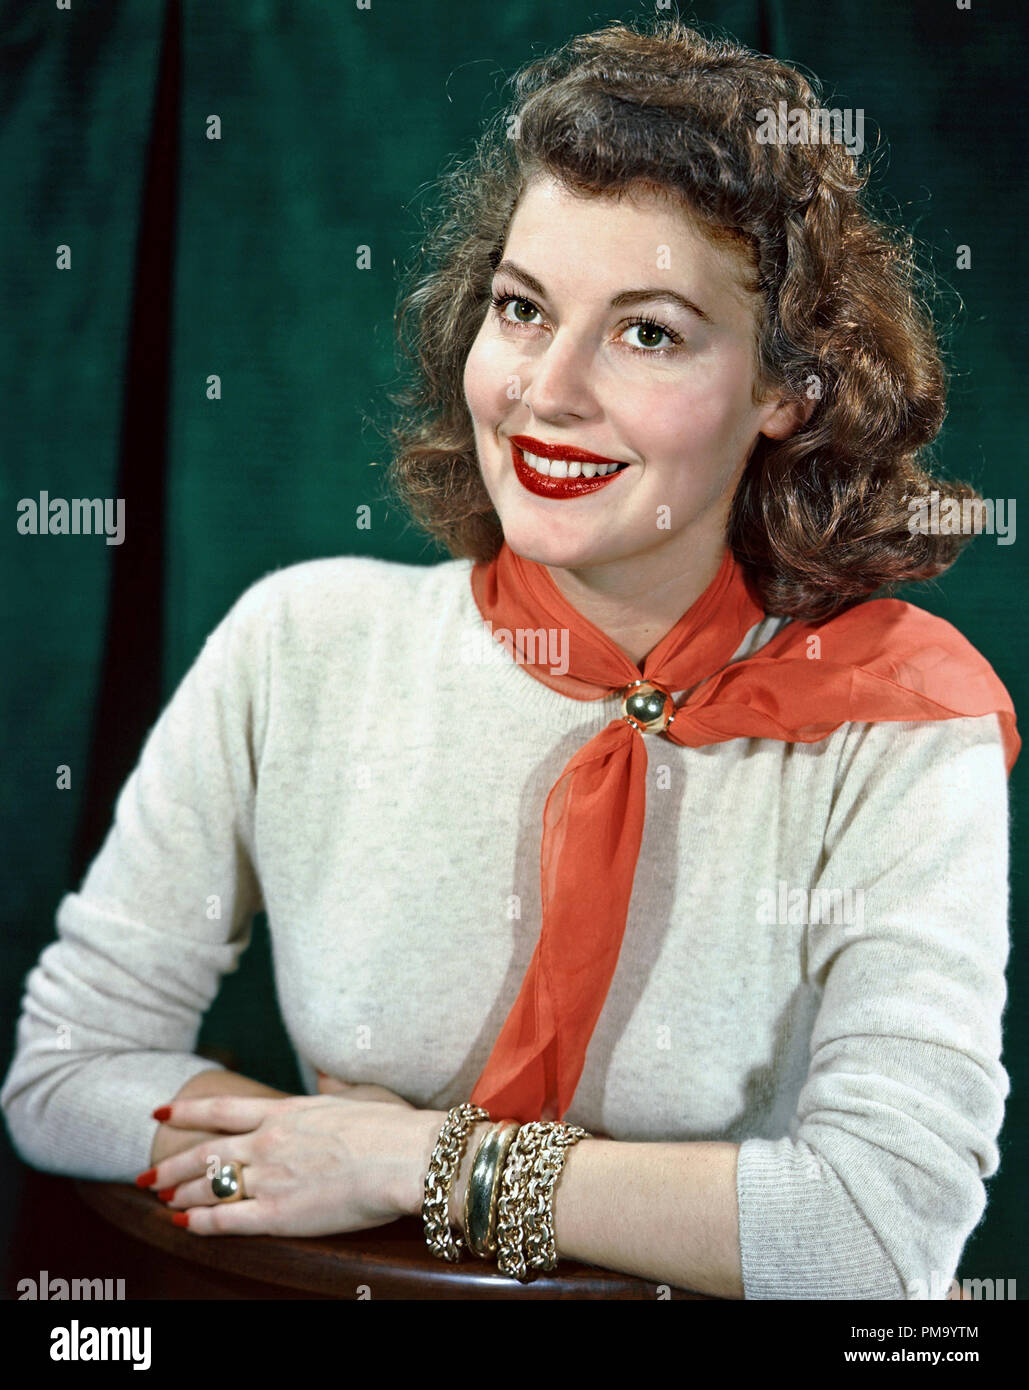 Studio Werbung noch: Ava Gardner ca. 1943 Datei Referenz # 31780 323 Stockfoto